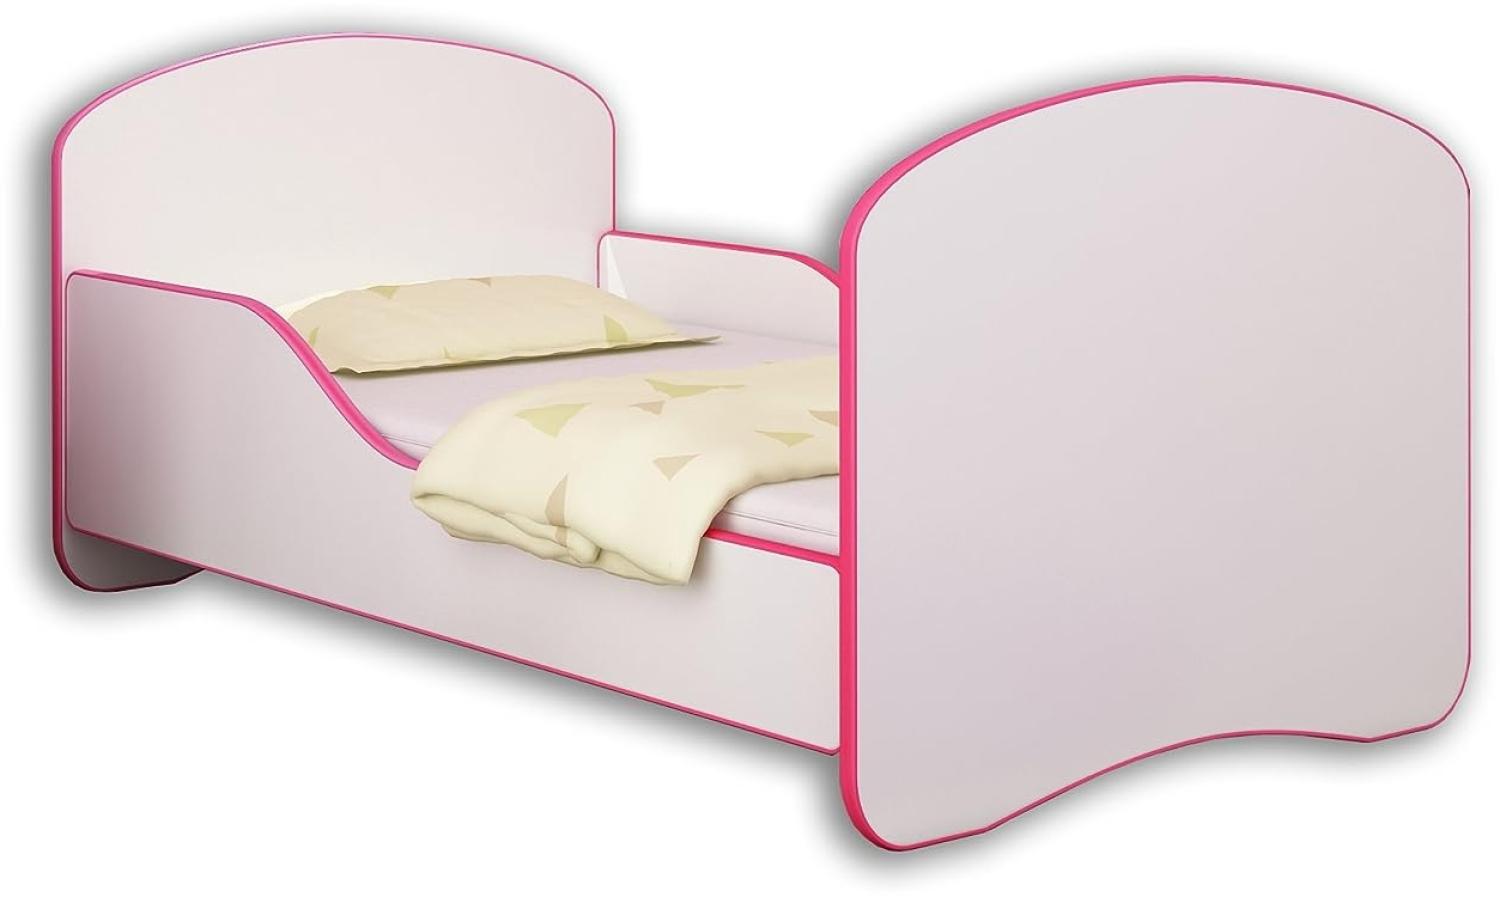 Jugendbett Kinderbett mit einer Schublade und Matratze Weiß ACMA I 140 160 180 (180x80 cm, Rosa) Bild 1